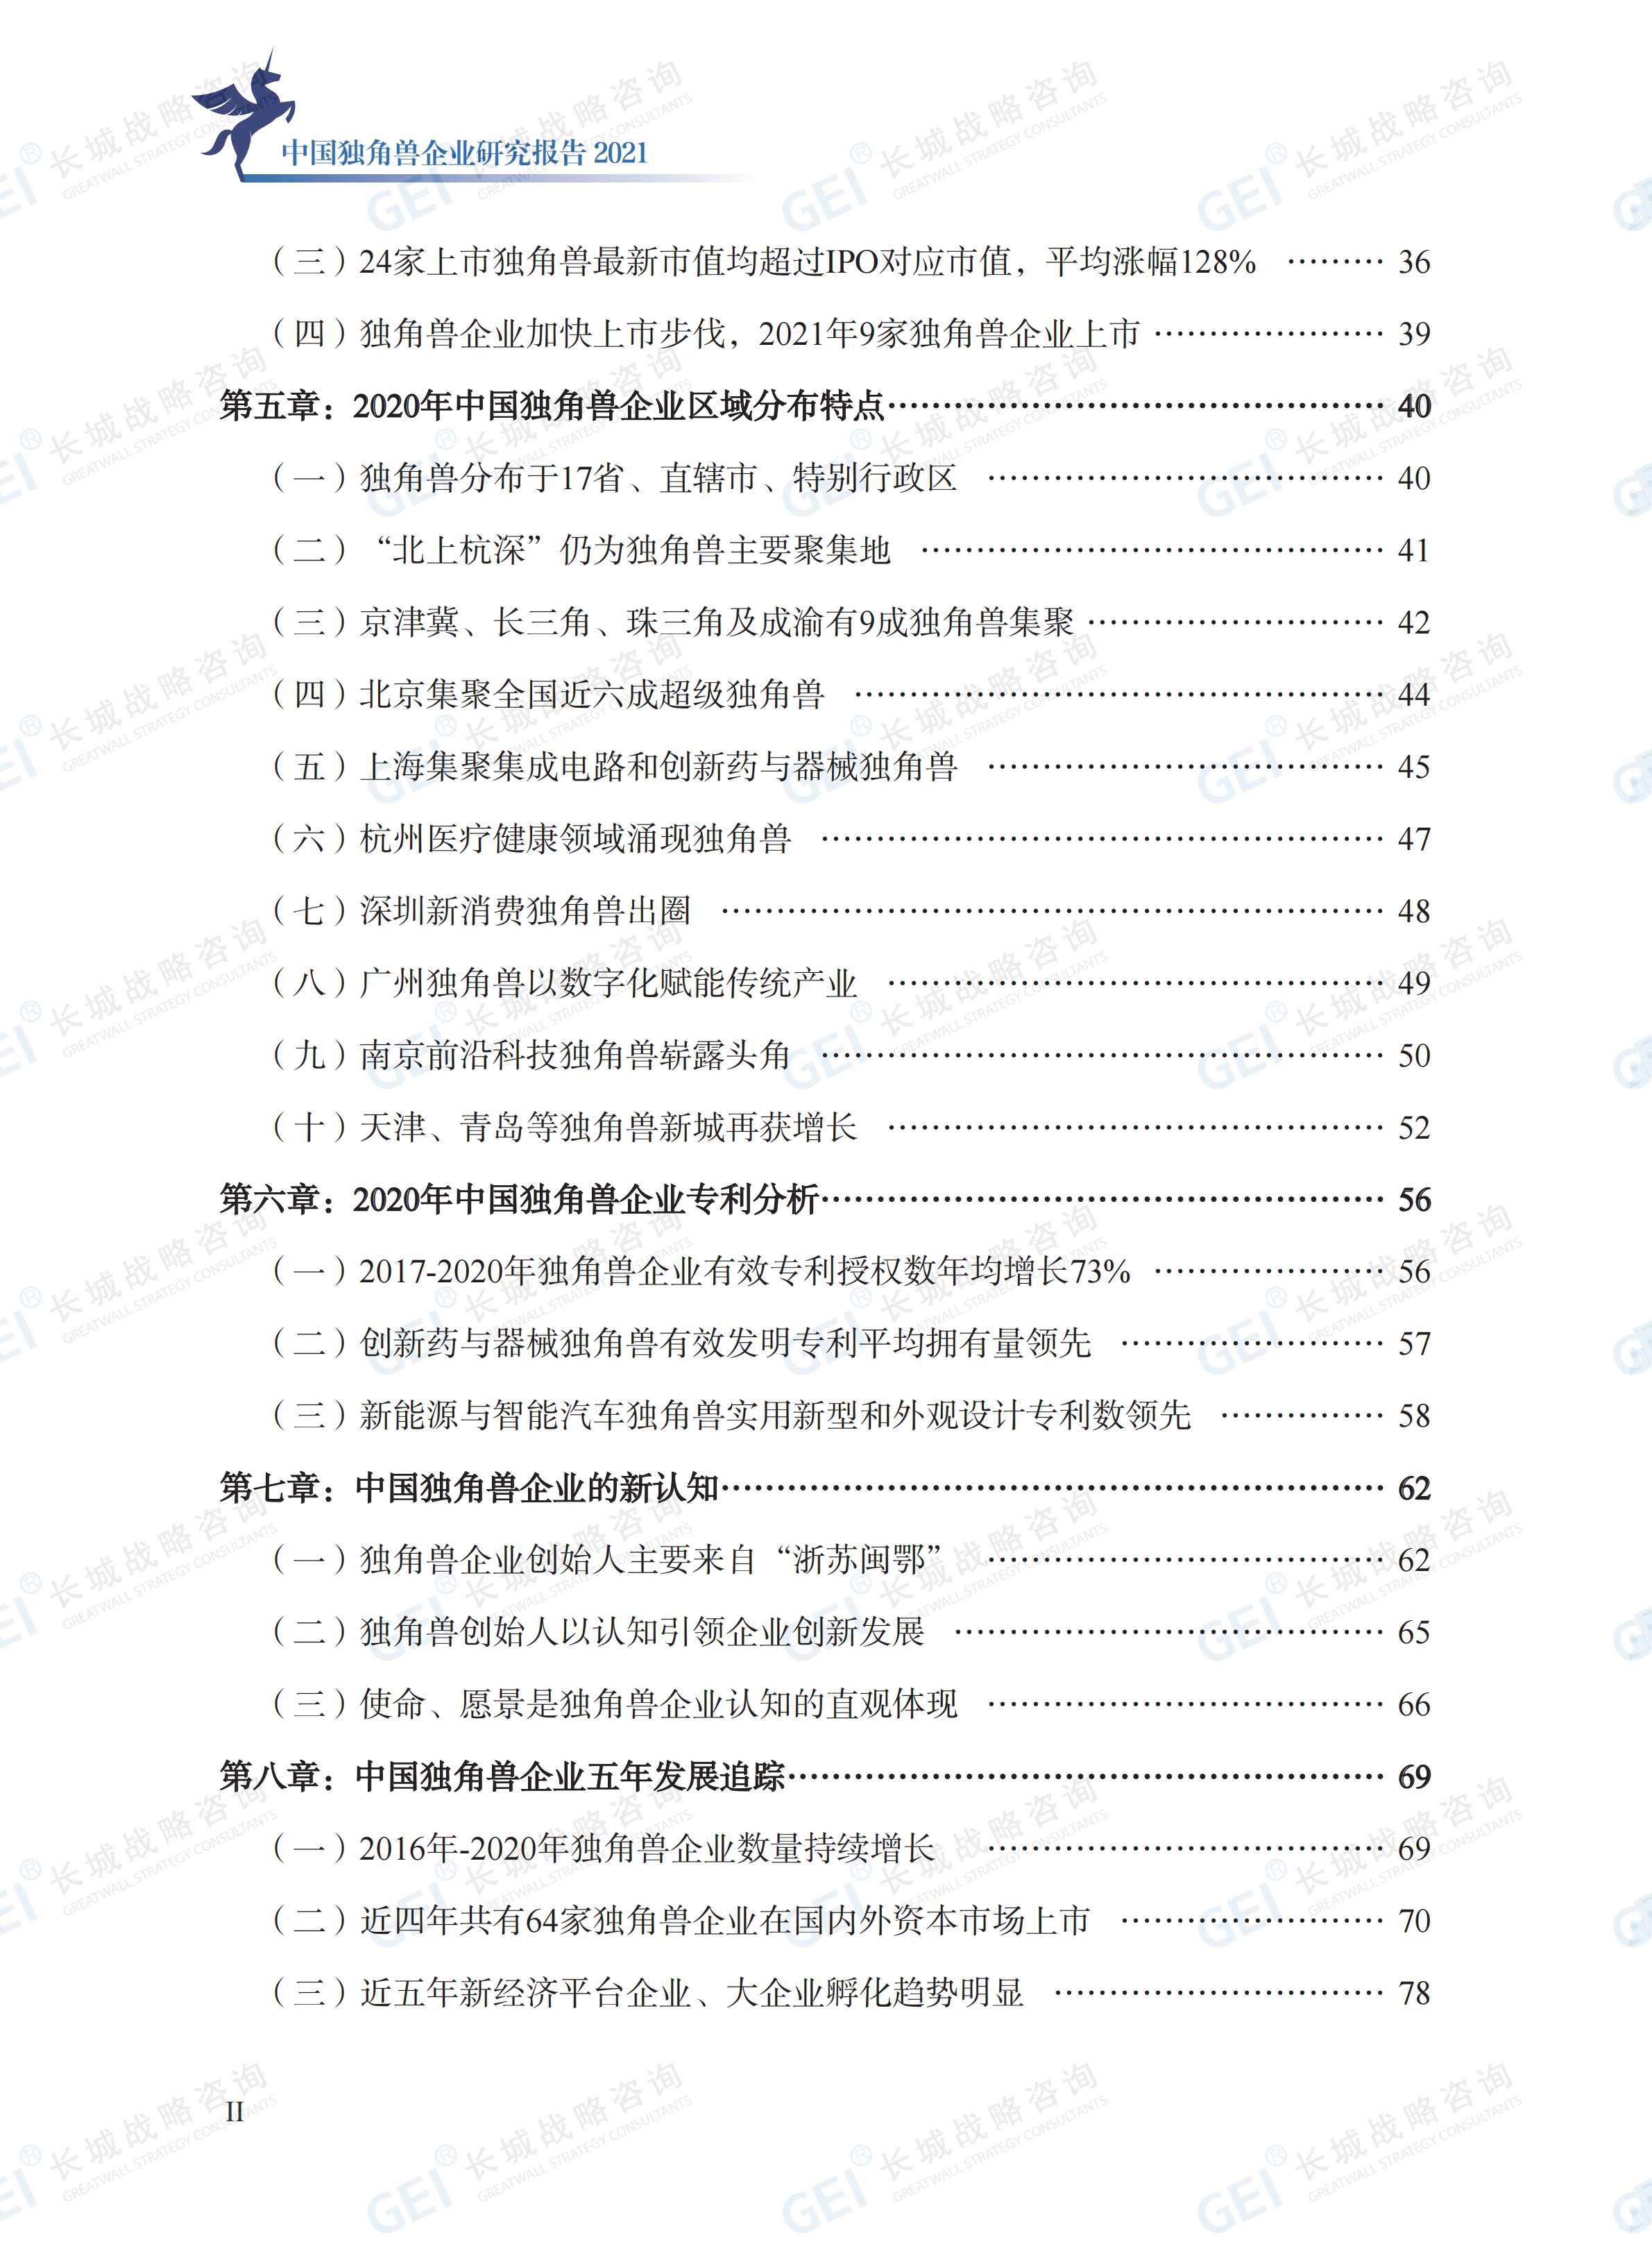 中国独角兽企业研究报告2021-水印(1)_06.png